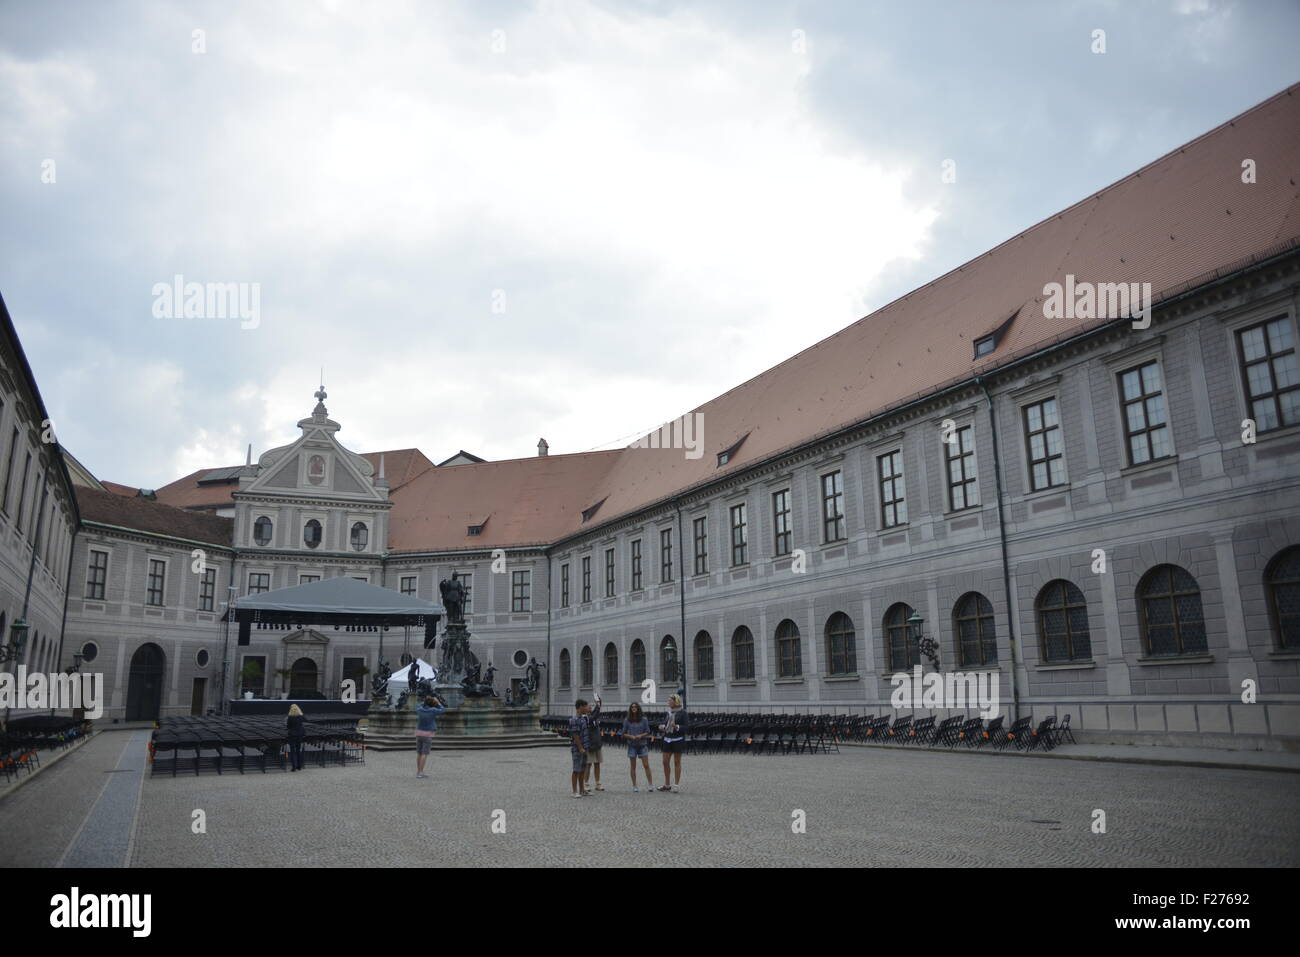 In Germania, in Baviera, Monaco di Baviera, Residenz, la vecchia residenza dei duchi della Baviera, la Galleria ancestrale Foto Stock